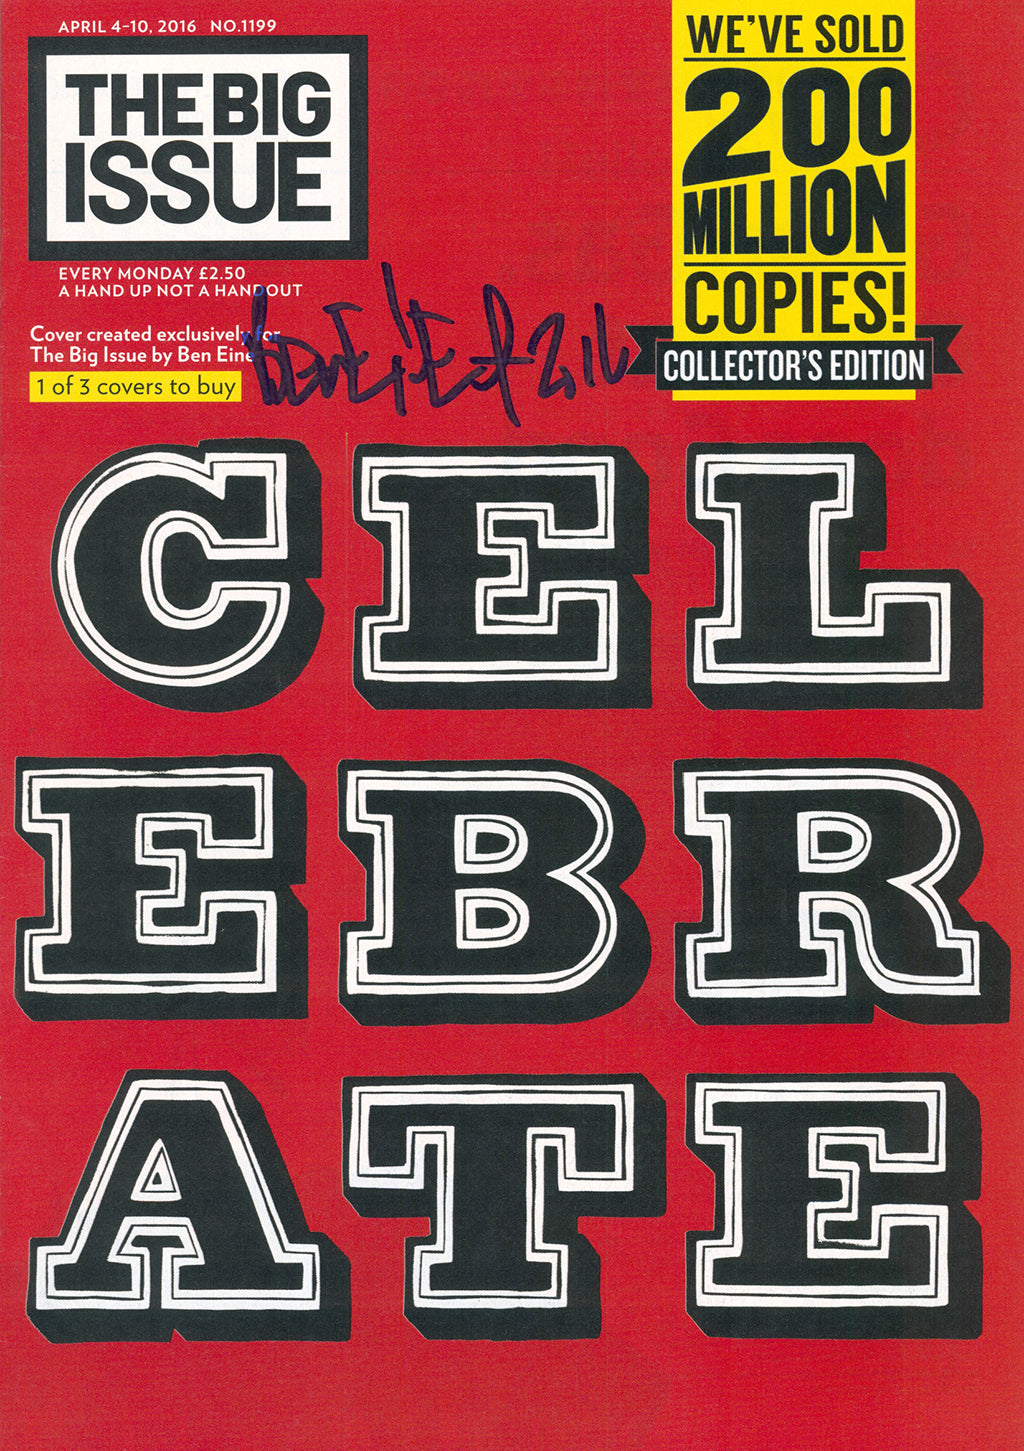 Eine, Ben - Set: Big Issue x Ben Eine Collector's Edition - hand signed - Magazine